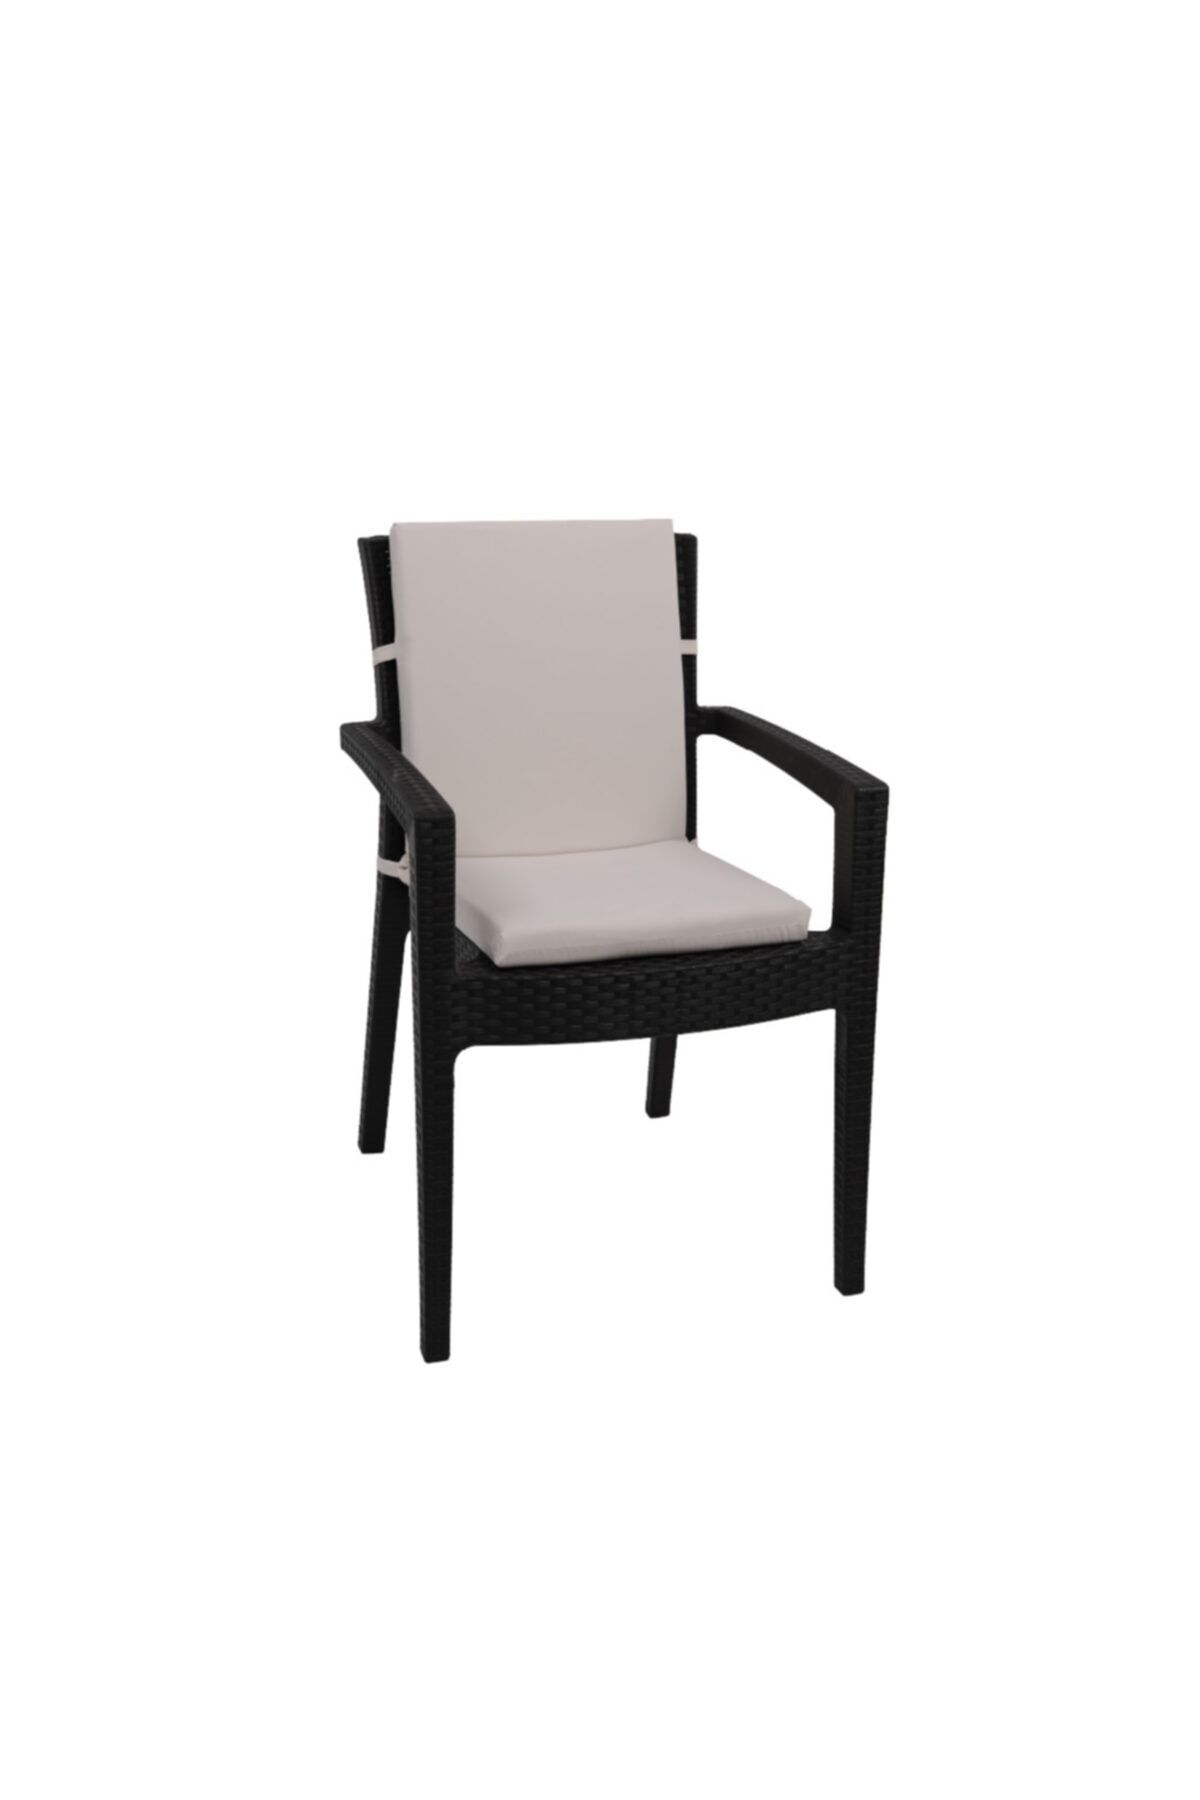 Kuscini Anemone Klasik Yüksek Arkalıklı Sandalye Minderi Krem 40x85